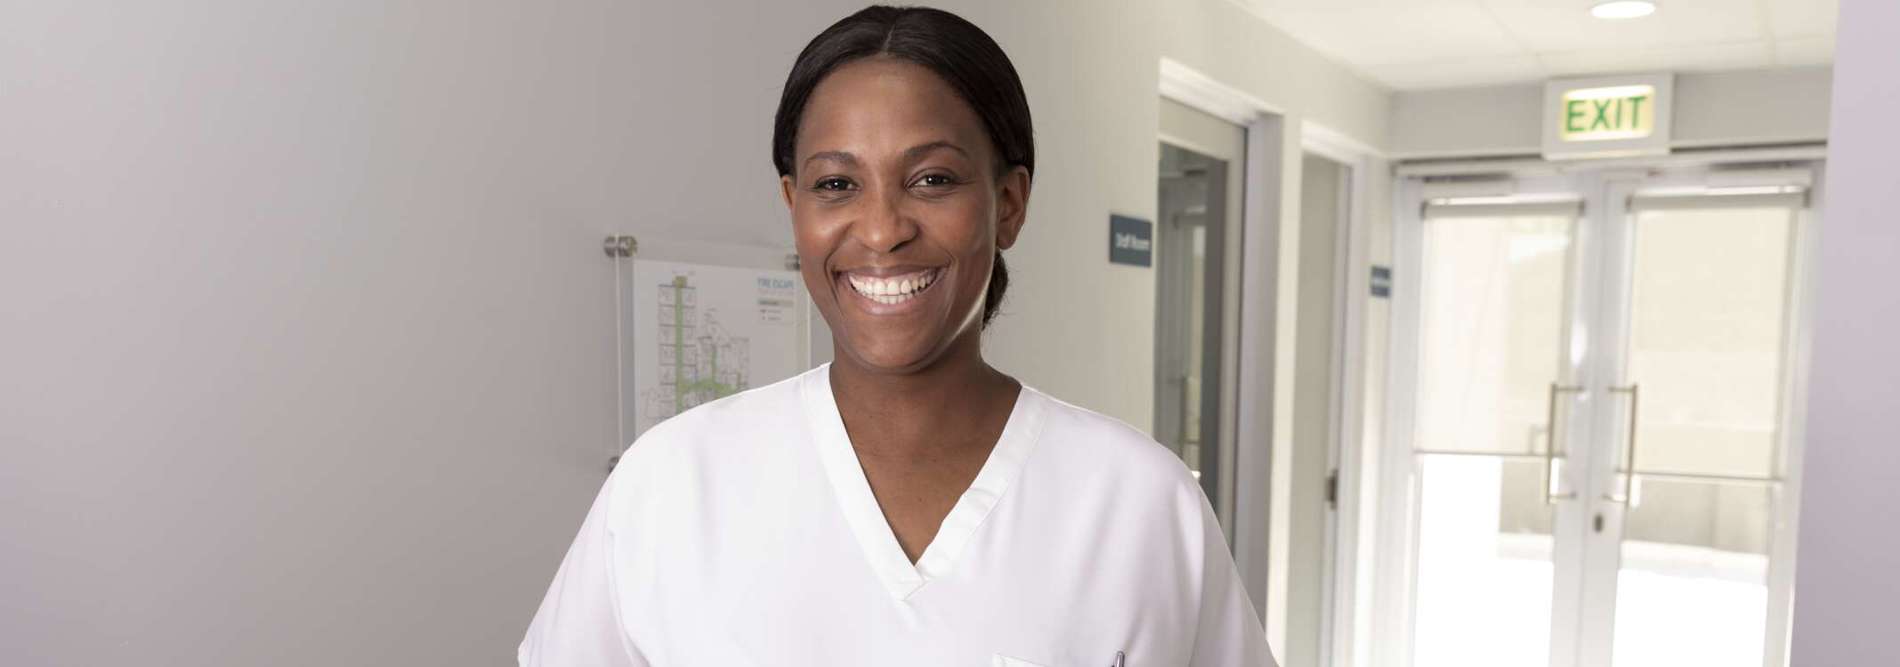 smiling nurse in corridor (1)